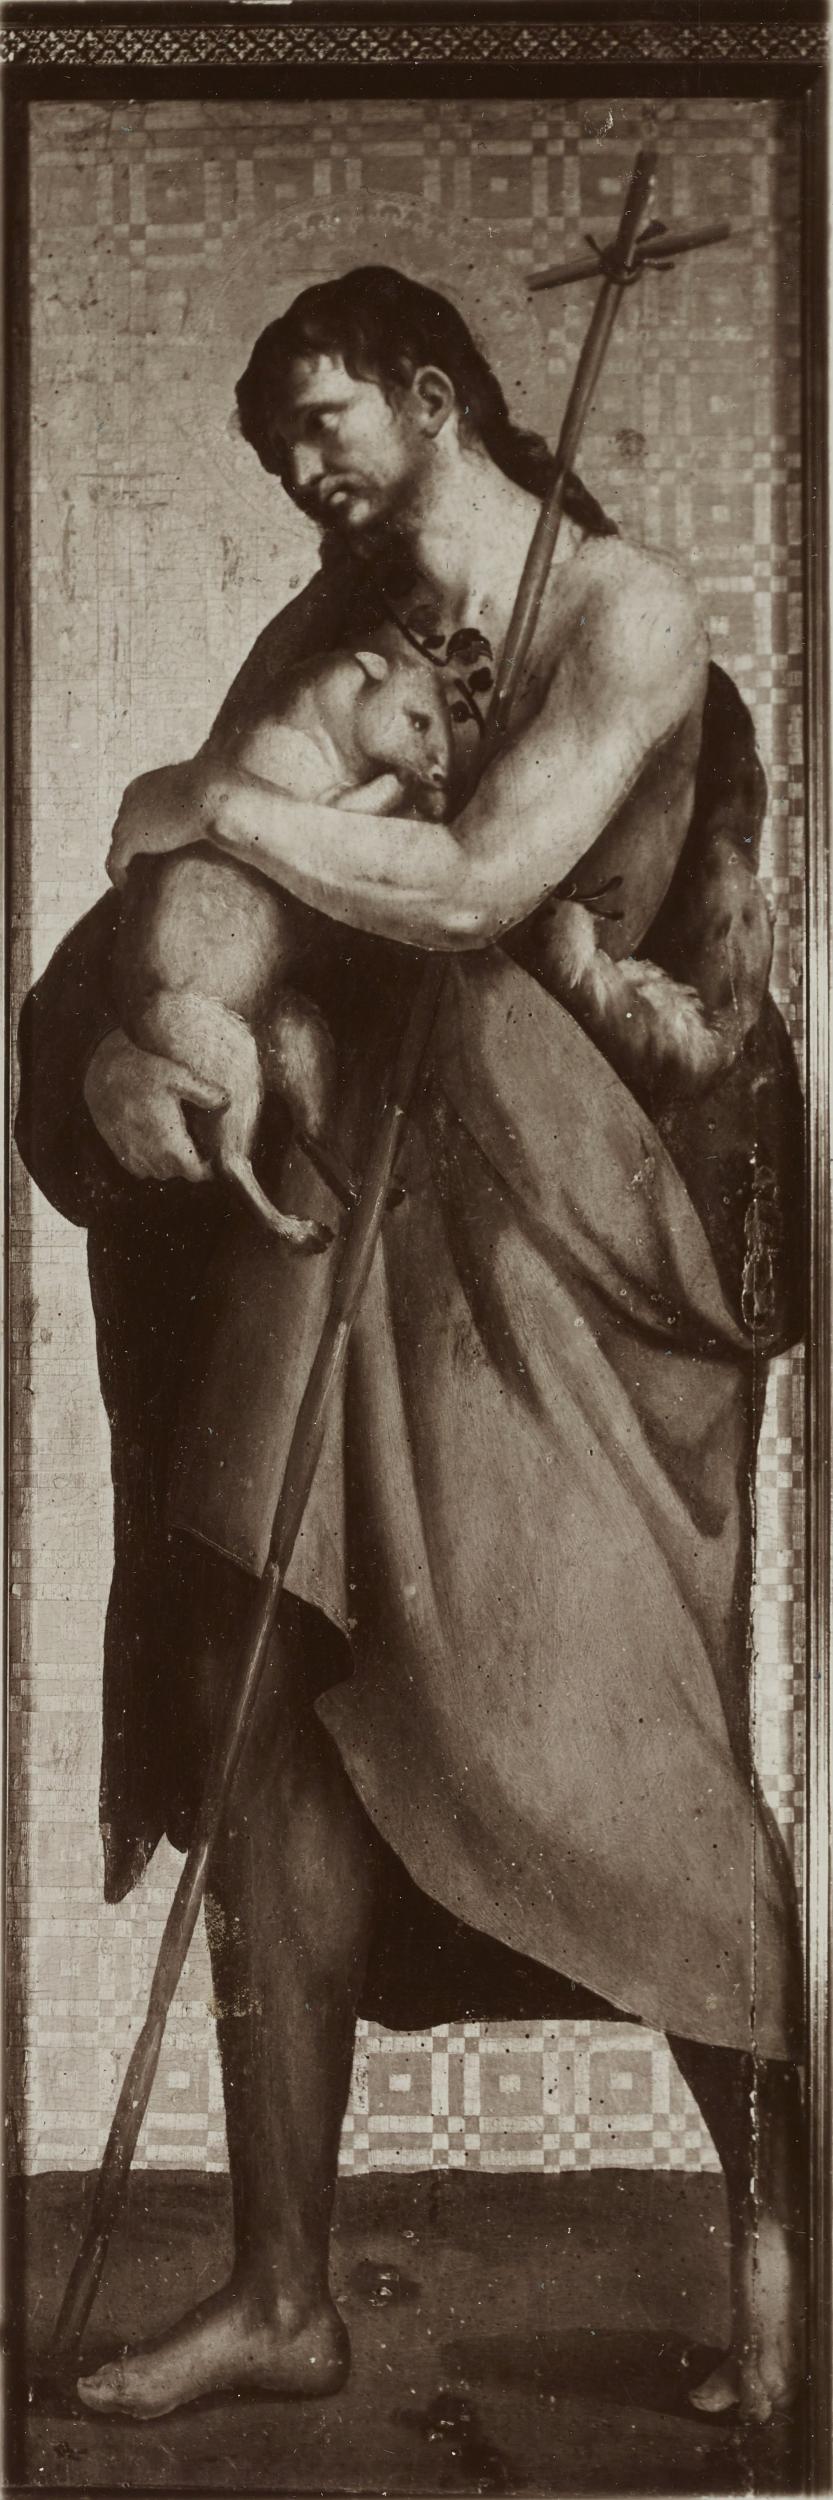 Antonio Ceccato, Barletta - Chiesa di S. Agostino, Polittico di S.Samuele, S. Giovanni Battista part., 1926-1950, gelatina ai sali d'argento/carta, MPI136908